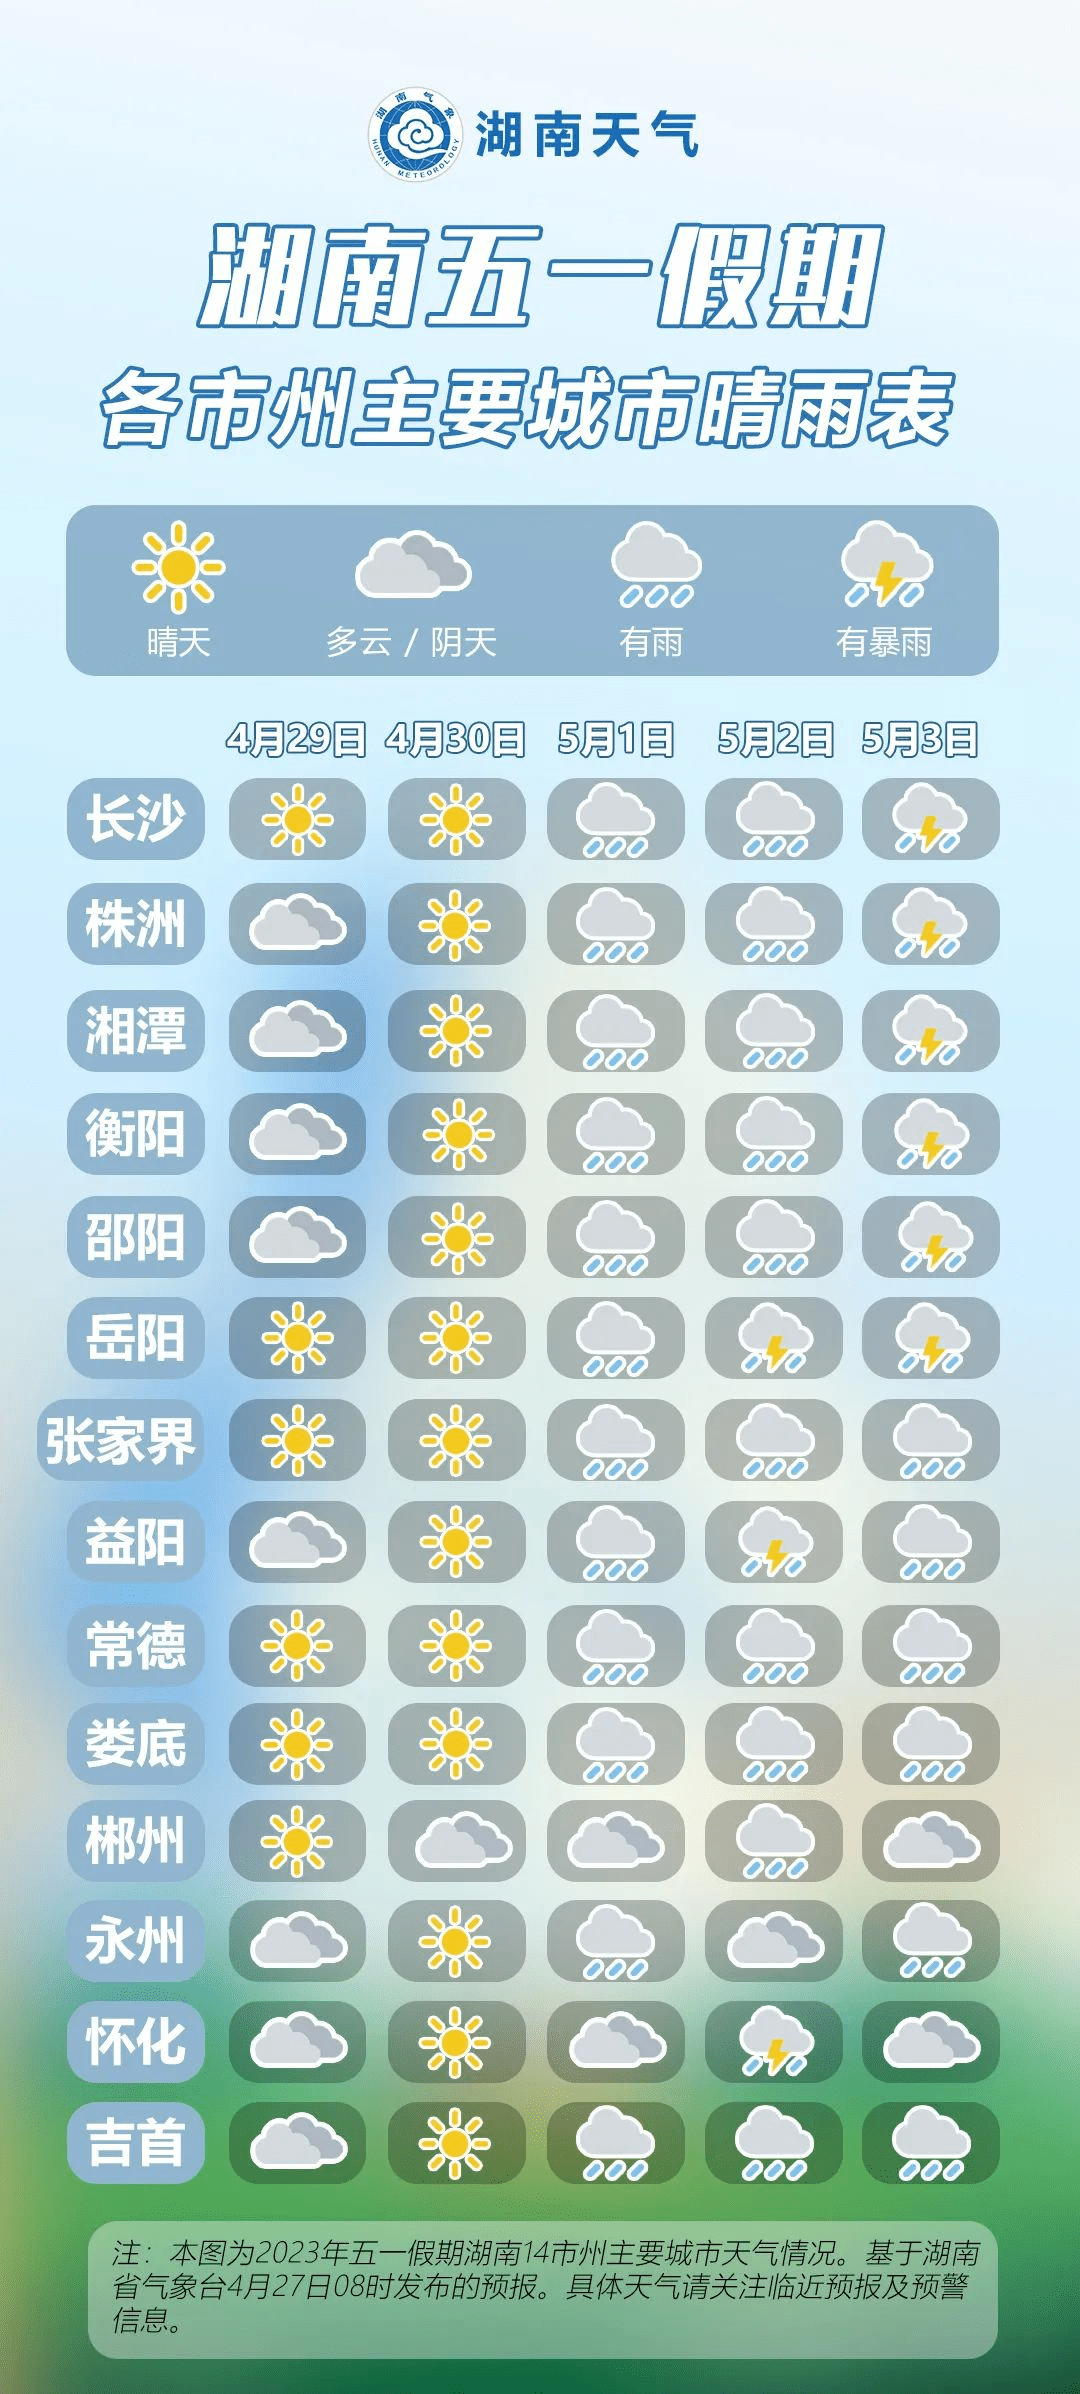 湘潭未来而一周天气预报根据湘潭最新气象资料显示明天开始湘潭又将有